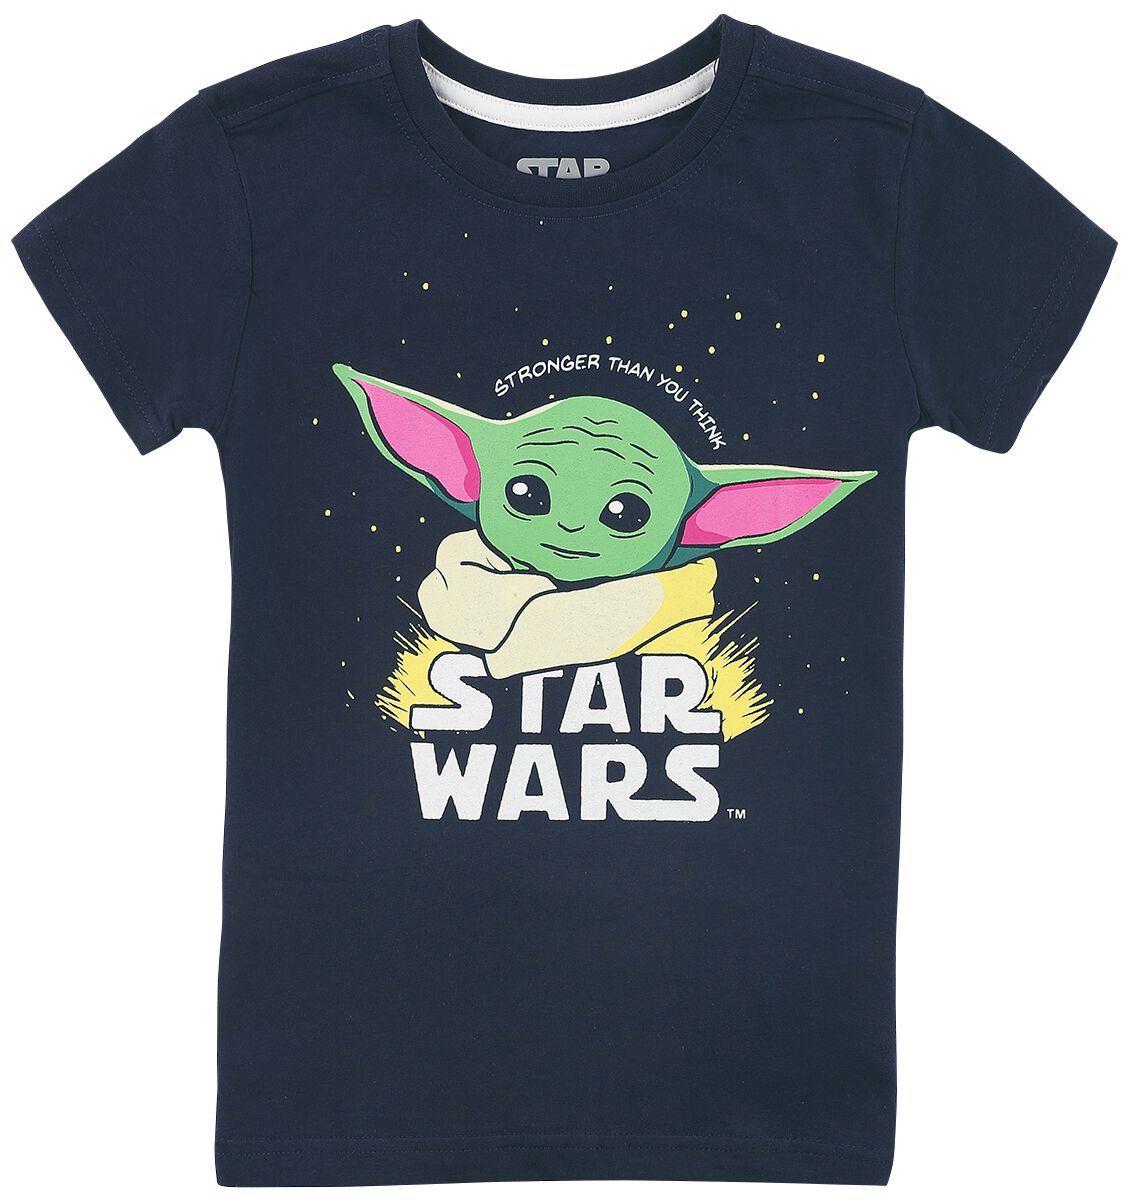 Star Wars T-Shirt für Kleinkinder - Kids - The Mandalorian - Baby Yoda - Grogu - für Mädchen & Jungen - dunkelblau  - EMP exklusives Merchandise!